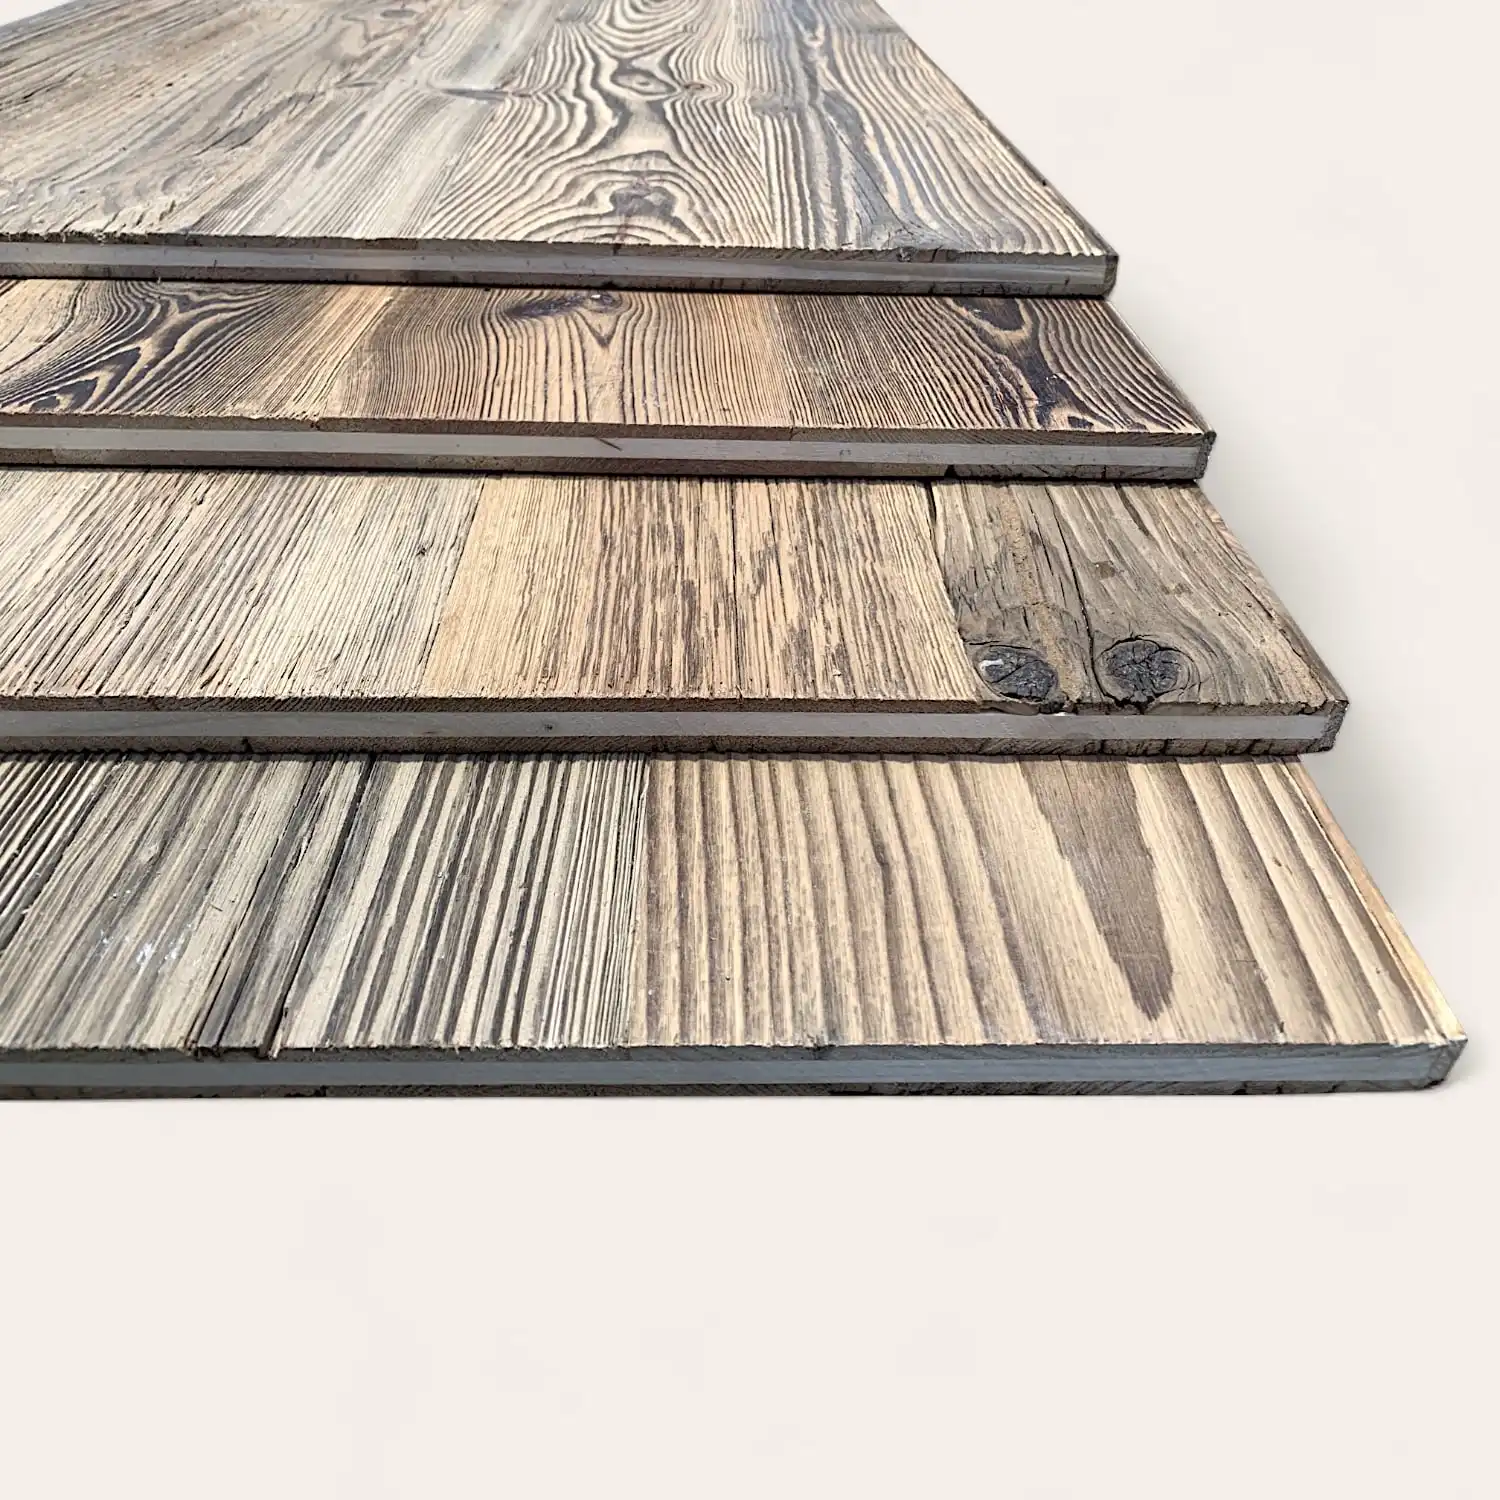  Planches de bois assorties avec des motifs et des finitions de grain variés, y compris des panneaux vieux bois, disposées en quinconce sur un fond clair. 